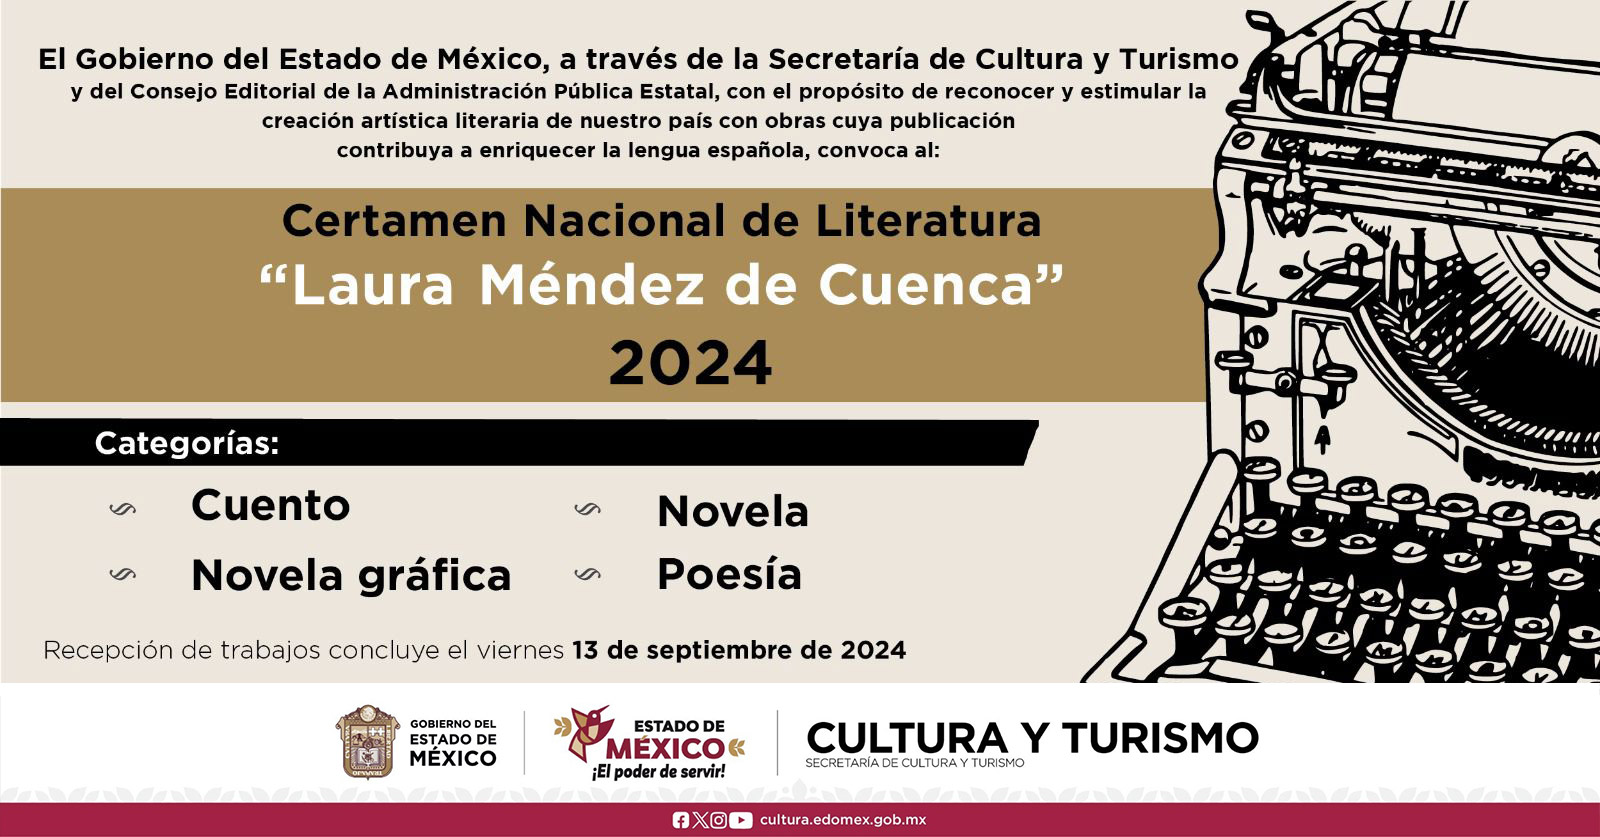 CERTAMEN NACIONAL DE LITERATURA "LAURA MENDEZ DE CUENCA" 2024